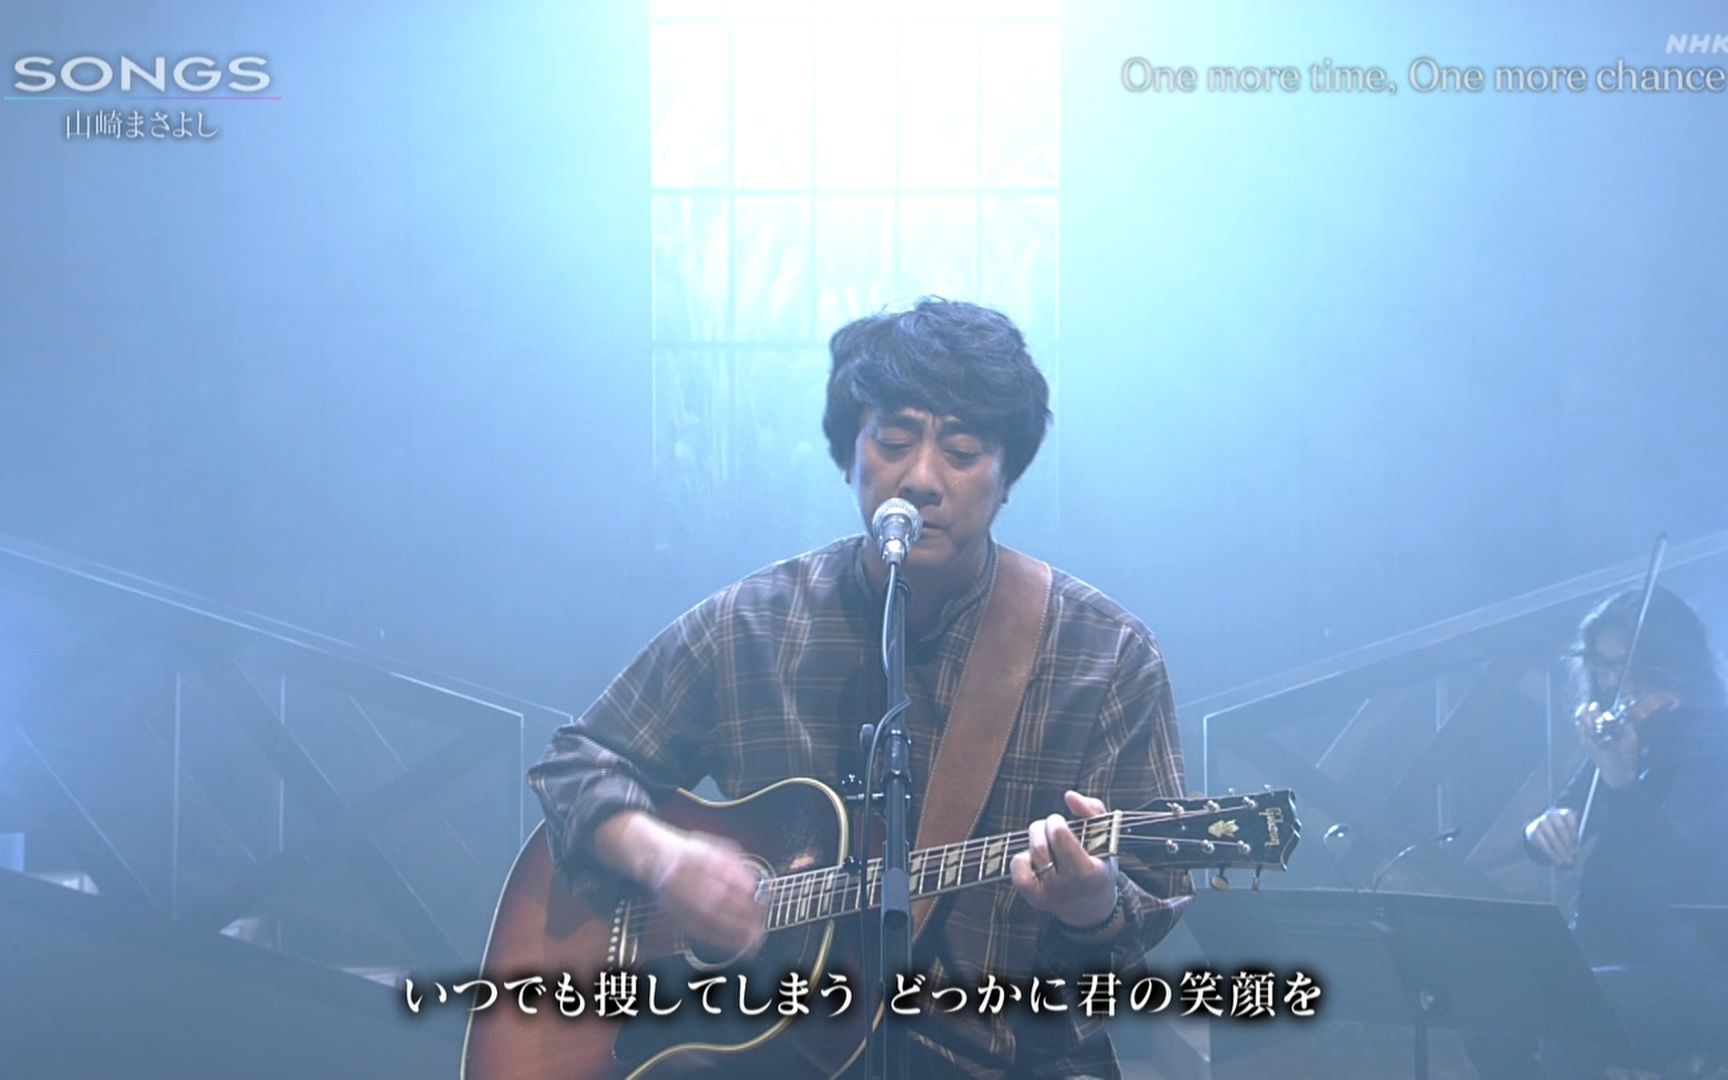 山崎まさよし- One more time, One more chance (20.11.07.NHK SONGS)_ 